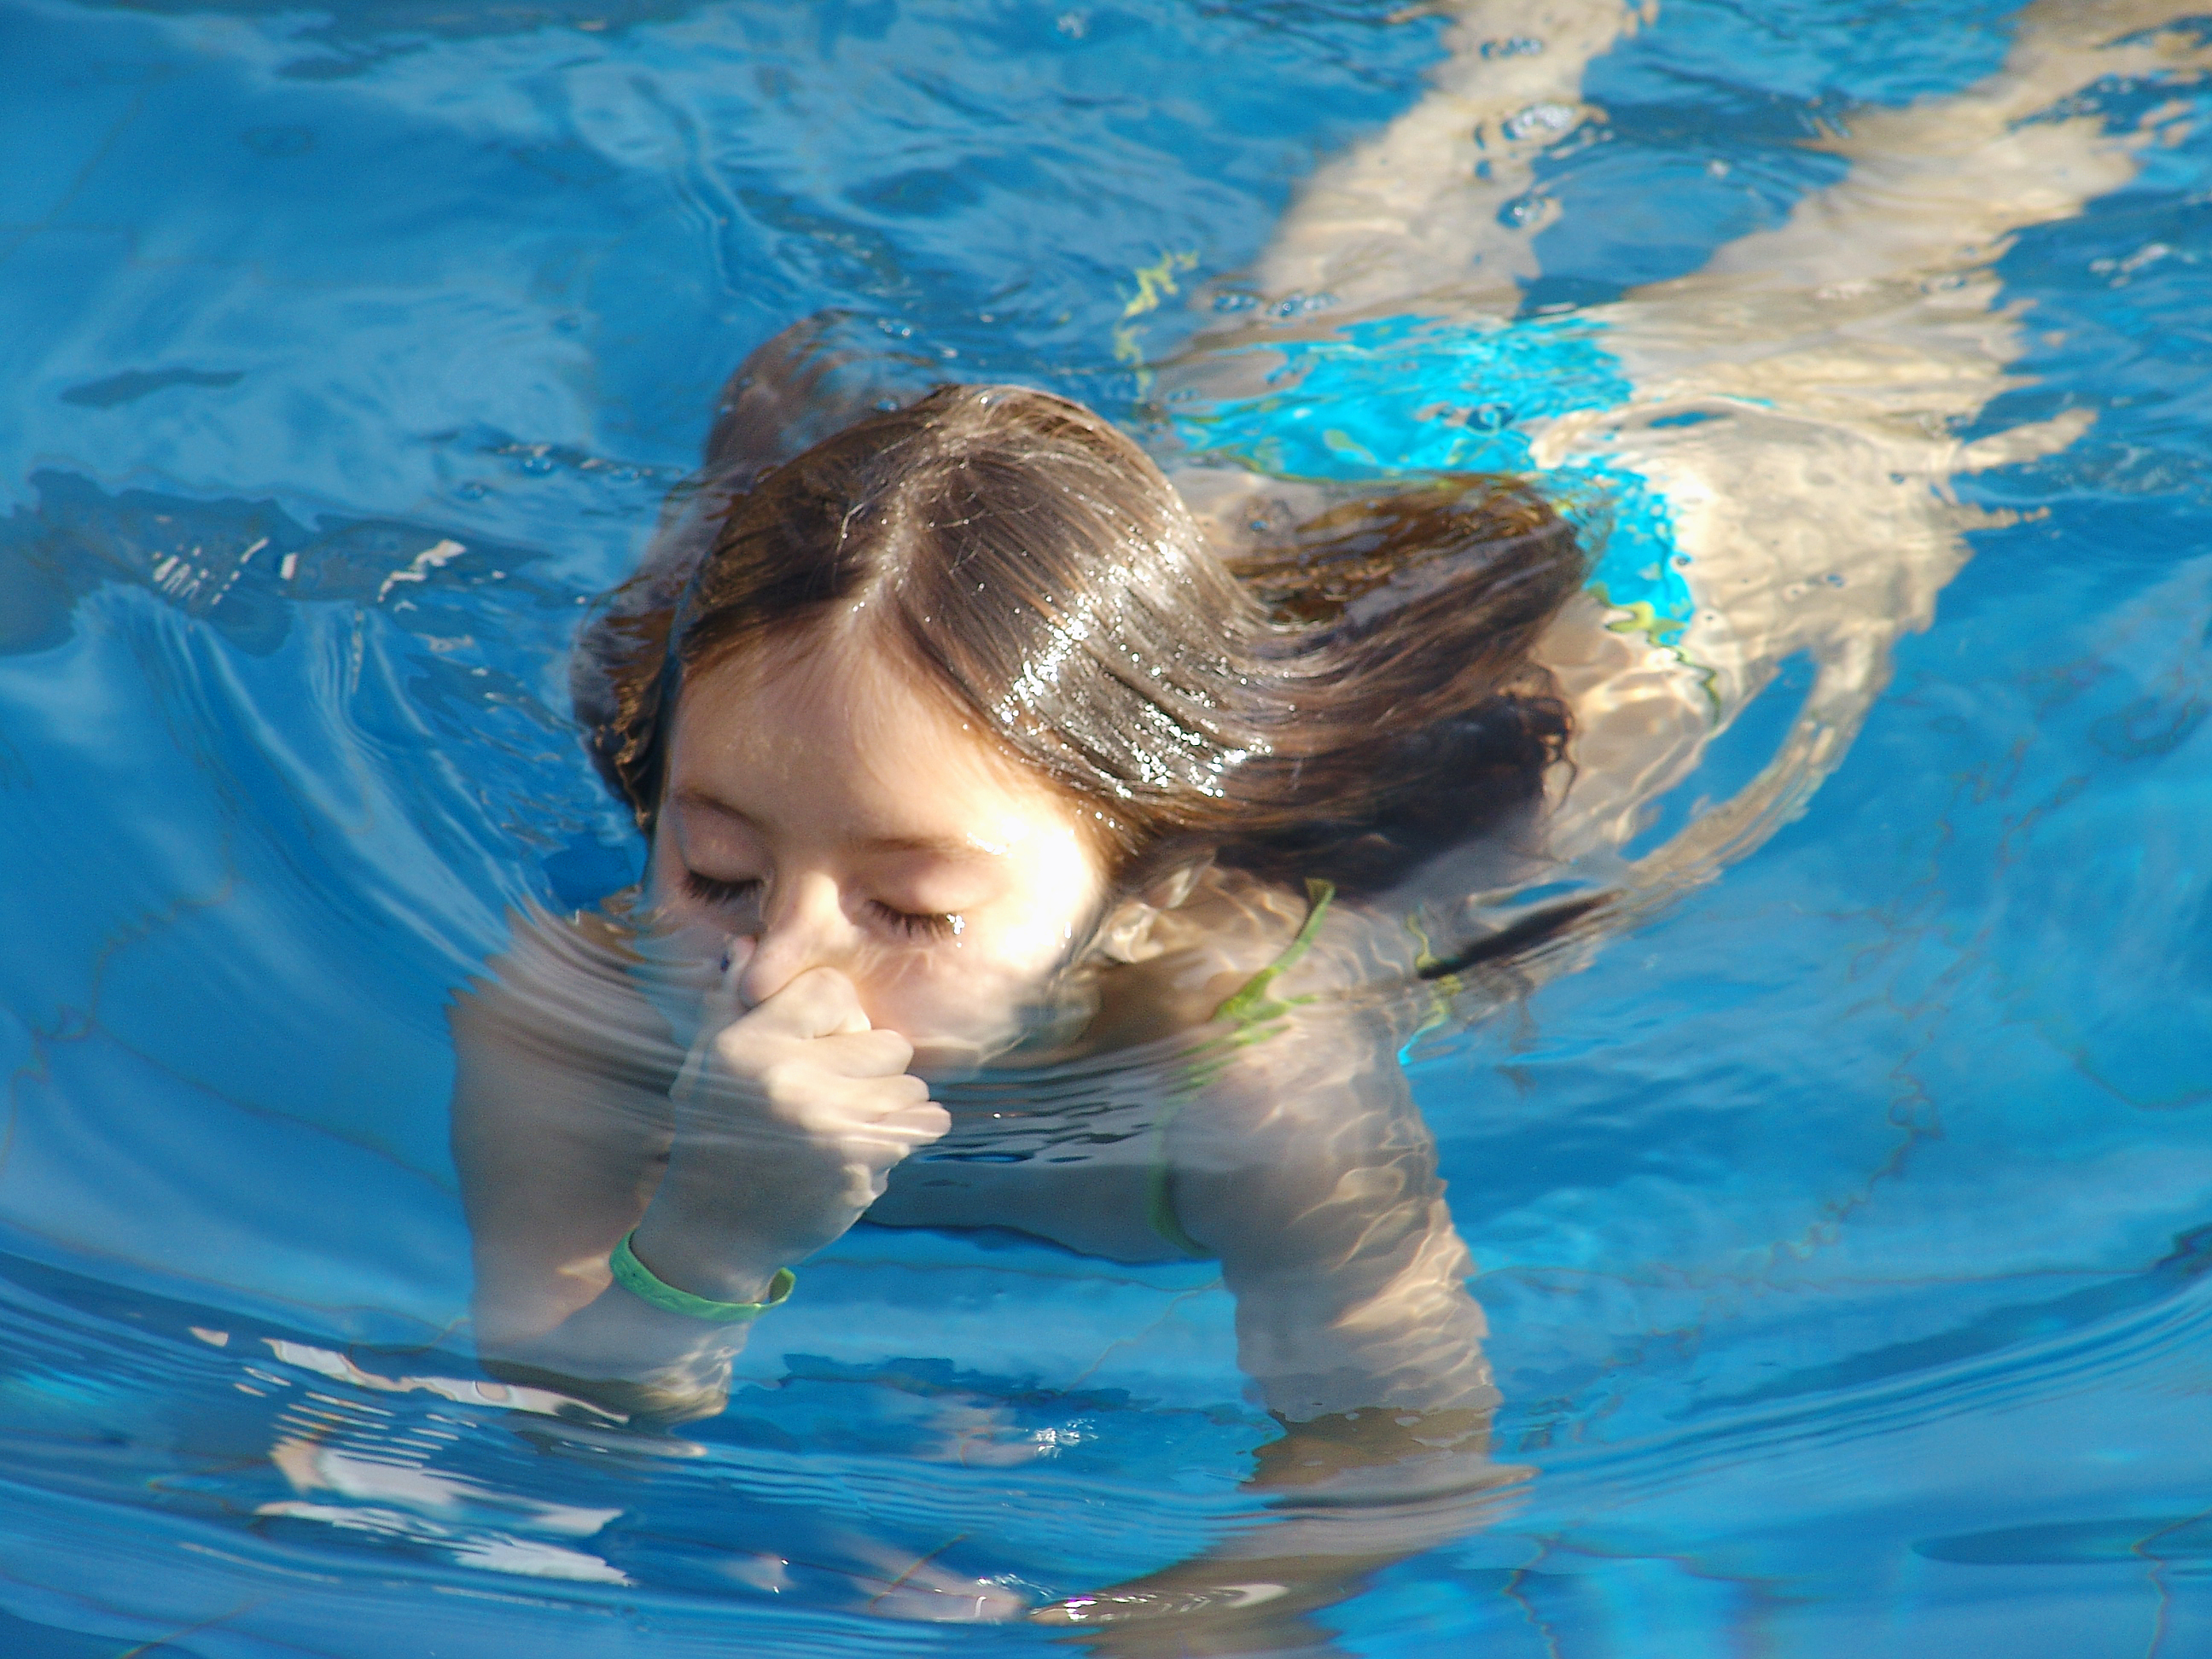 Сестренка купается. Купаться в бассейне. Девушка купается в бассейне. Девочка купается в бассейне.